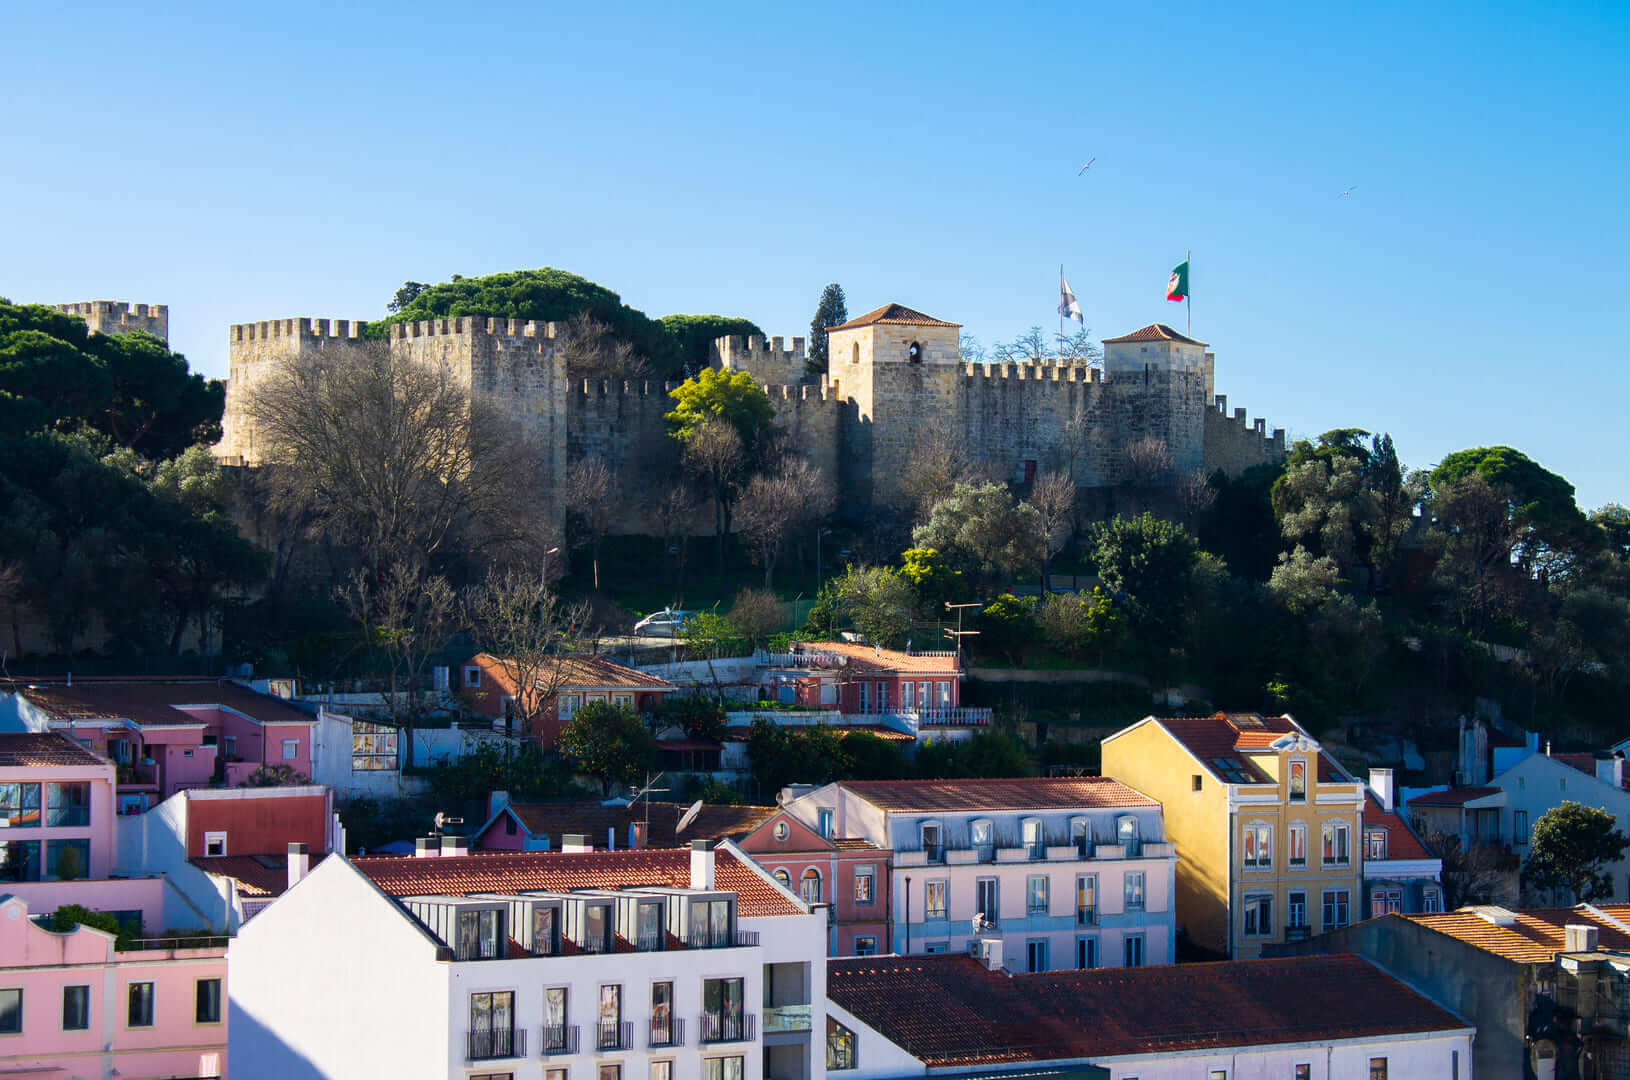 Una vista attraverso gli edifici colorati, i tetti e i giardini di Lisbona, Portogallo, verso l'imponente Castelo de S. Jorge (Castello di San Giorgio) in una giornata di sole.